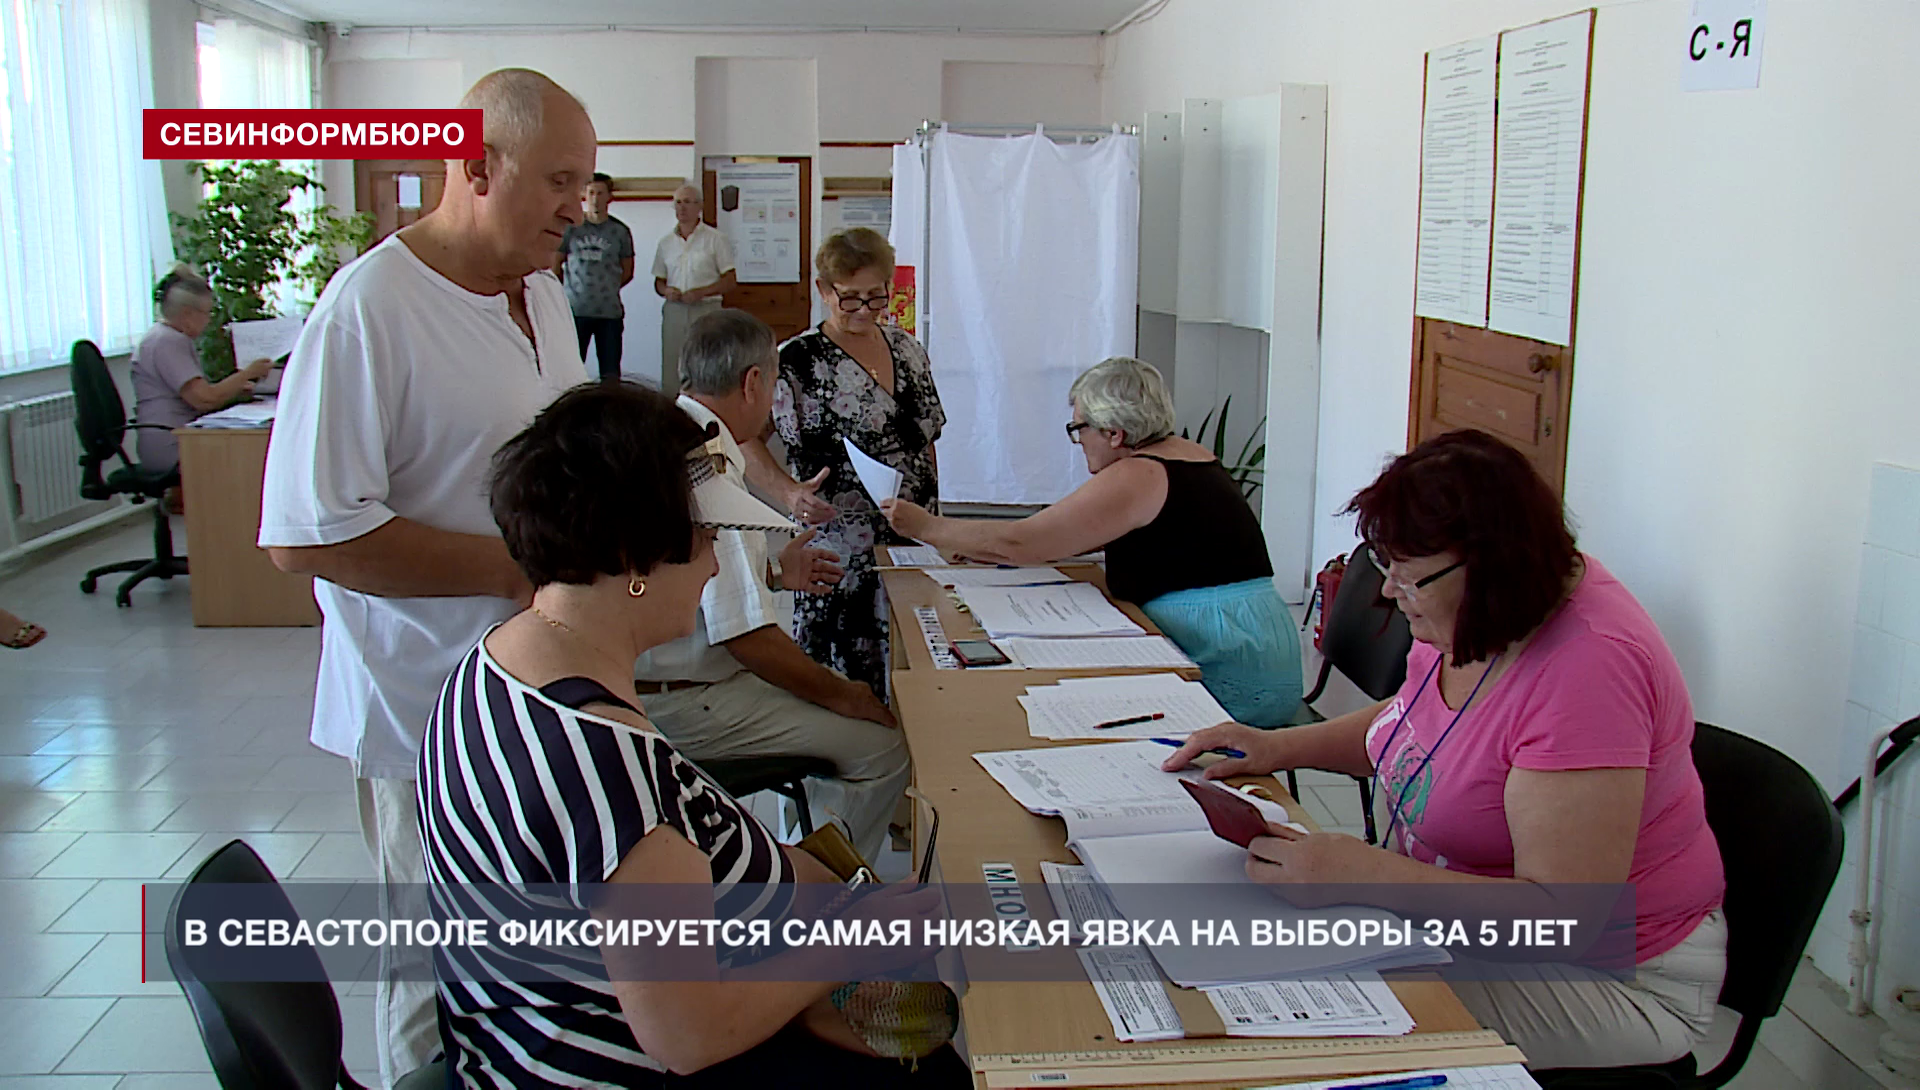 Явка на выборах в севастополе. Выборы 2019 года Севастополь депутаты. Низкая явка на выборах.